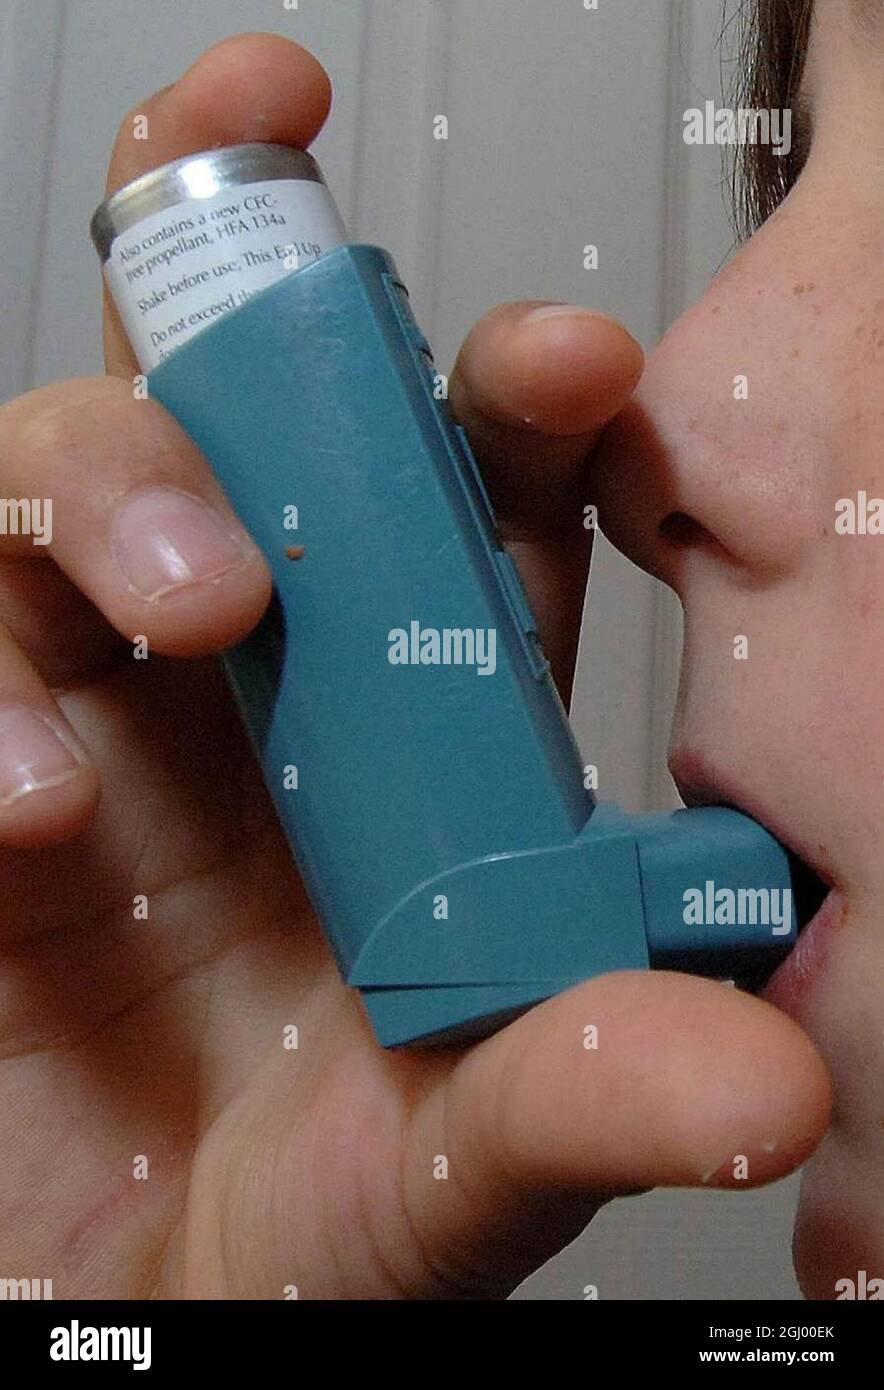 Aktenfoto vom 28/11/06 von einem Inhalator, der von einem Kind zur Behandlung von Asthma verwendet wird. Asthmatische Kinder reagieren weniger wahrscheinlich auf eingeatmete Steroide, wenn sie übergewichtig oder fettleibig sind, was zu häufigeren Asthmaanfällen führt, wie eine Studie ergab. Ausgabedatum: Mittwoch, 8. September 2021. Stockfoto